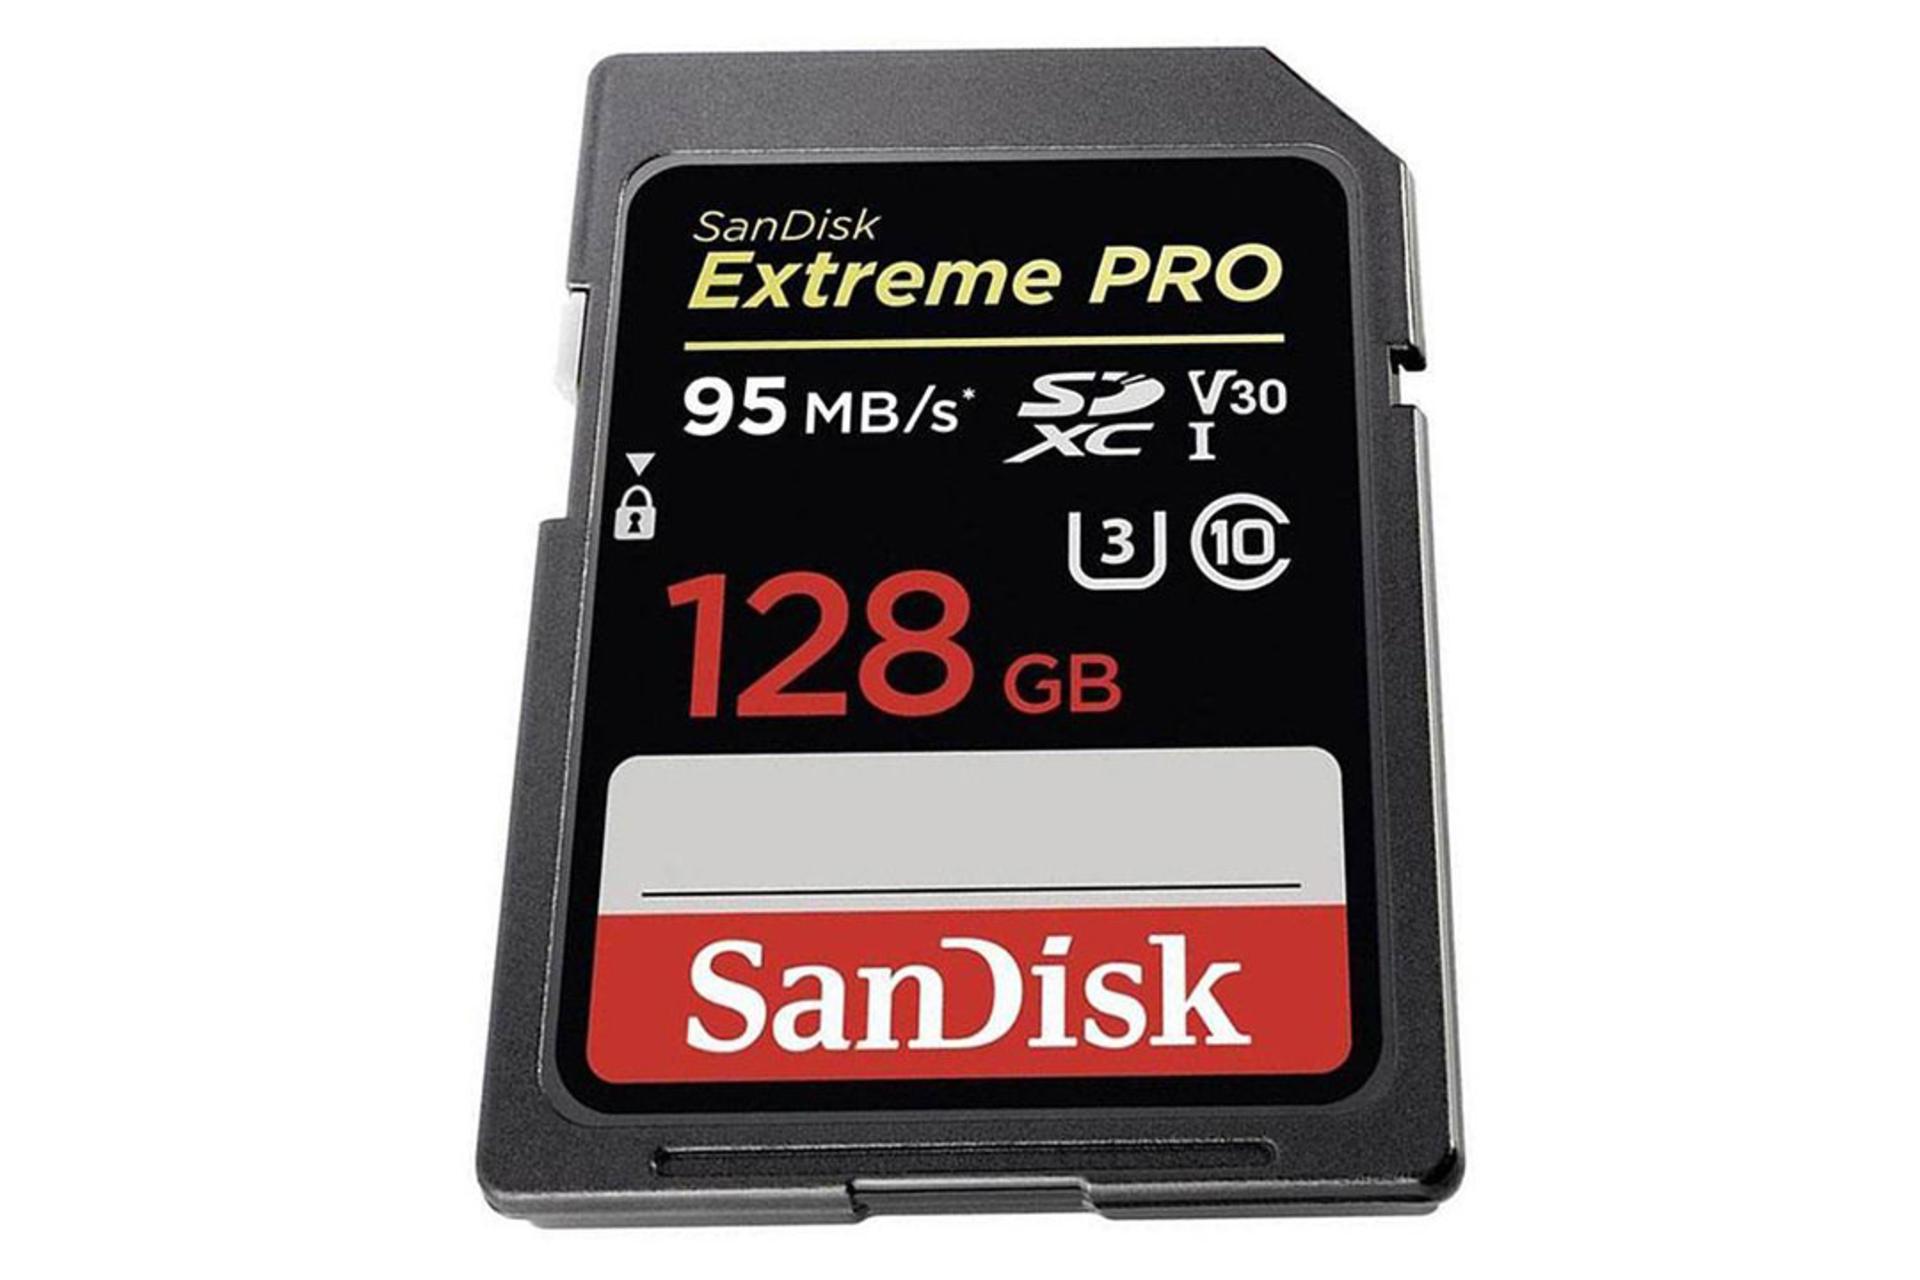 مرجع متخصصين ايران SanDisk Extreme Pro V30 SDHC Class 10 UHS-I U3 128GB